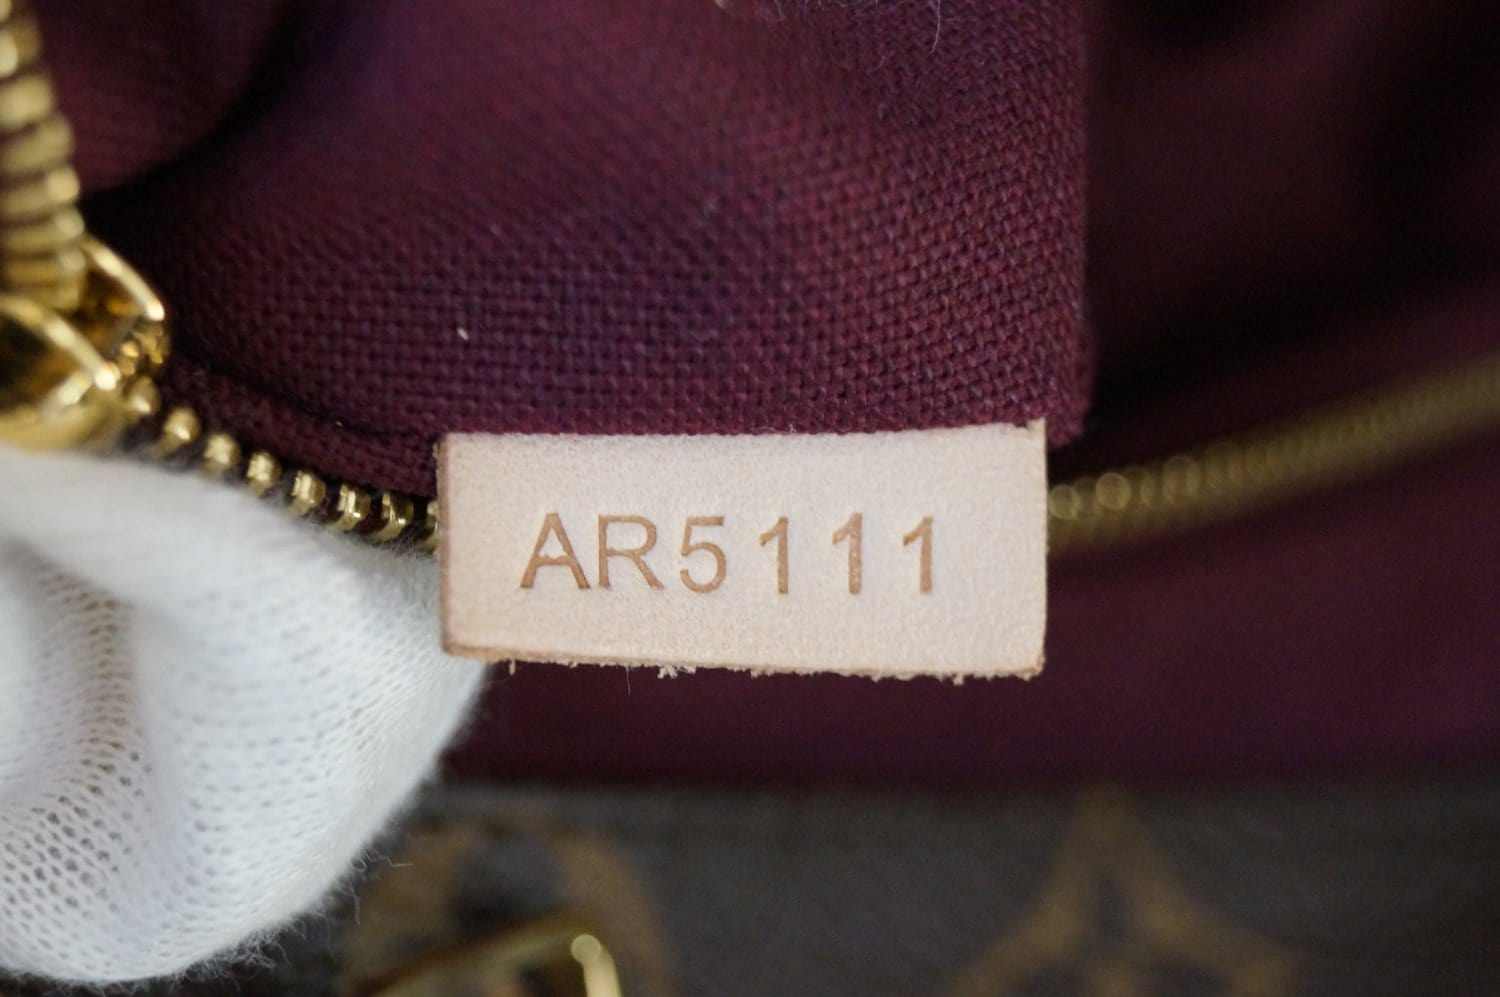 Louis Vuitton Monogram Raspail PM - Brown Totes, Handbags - LOU686191